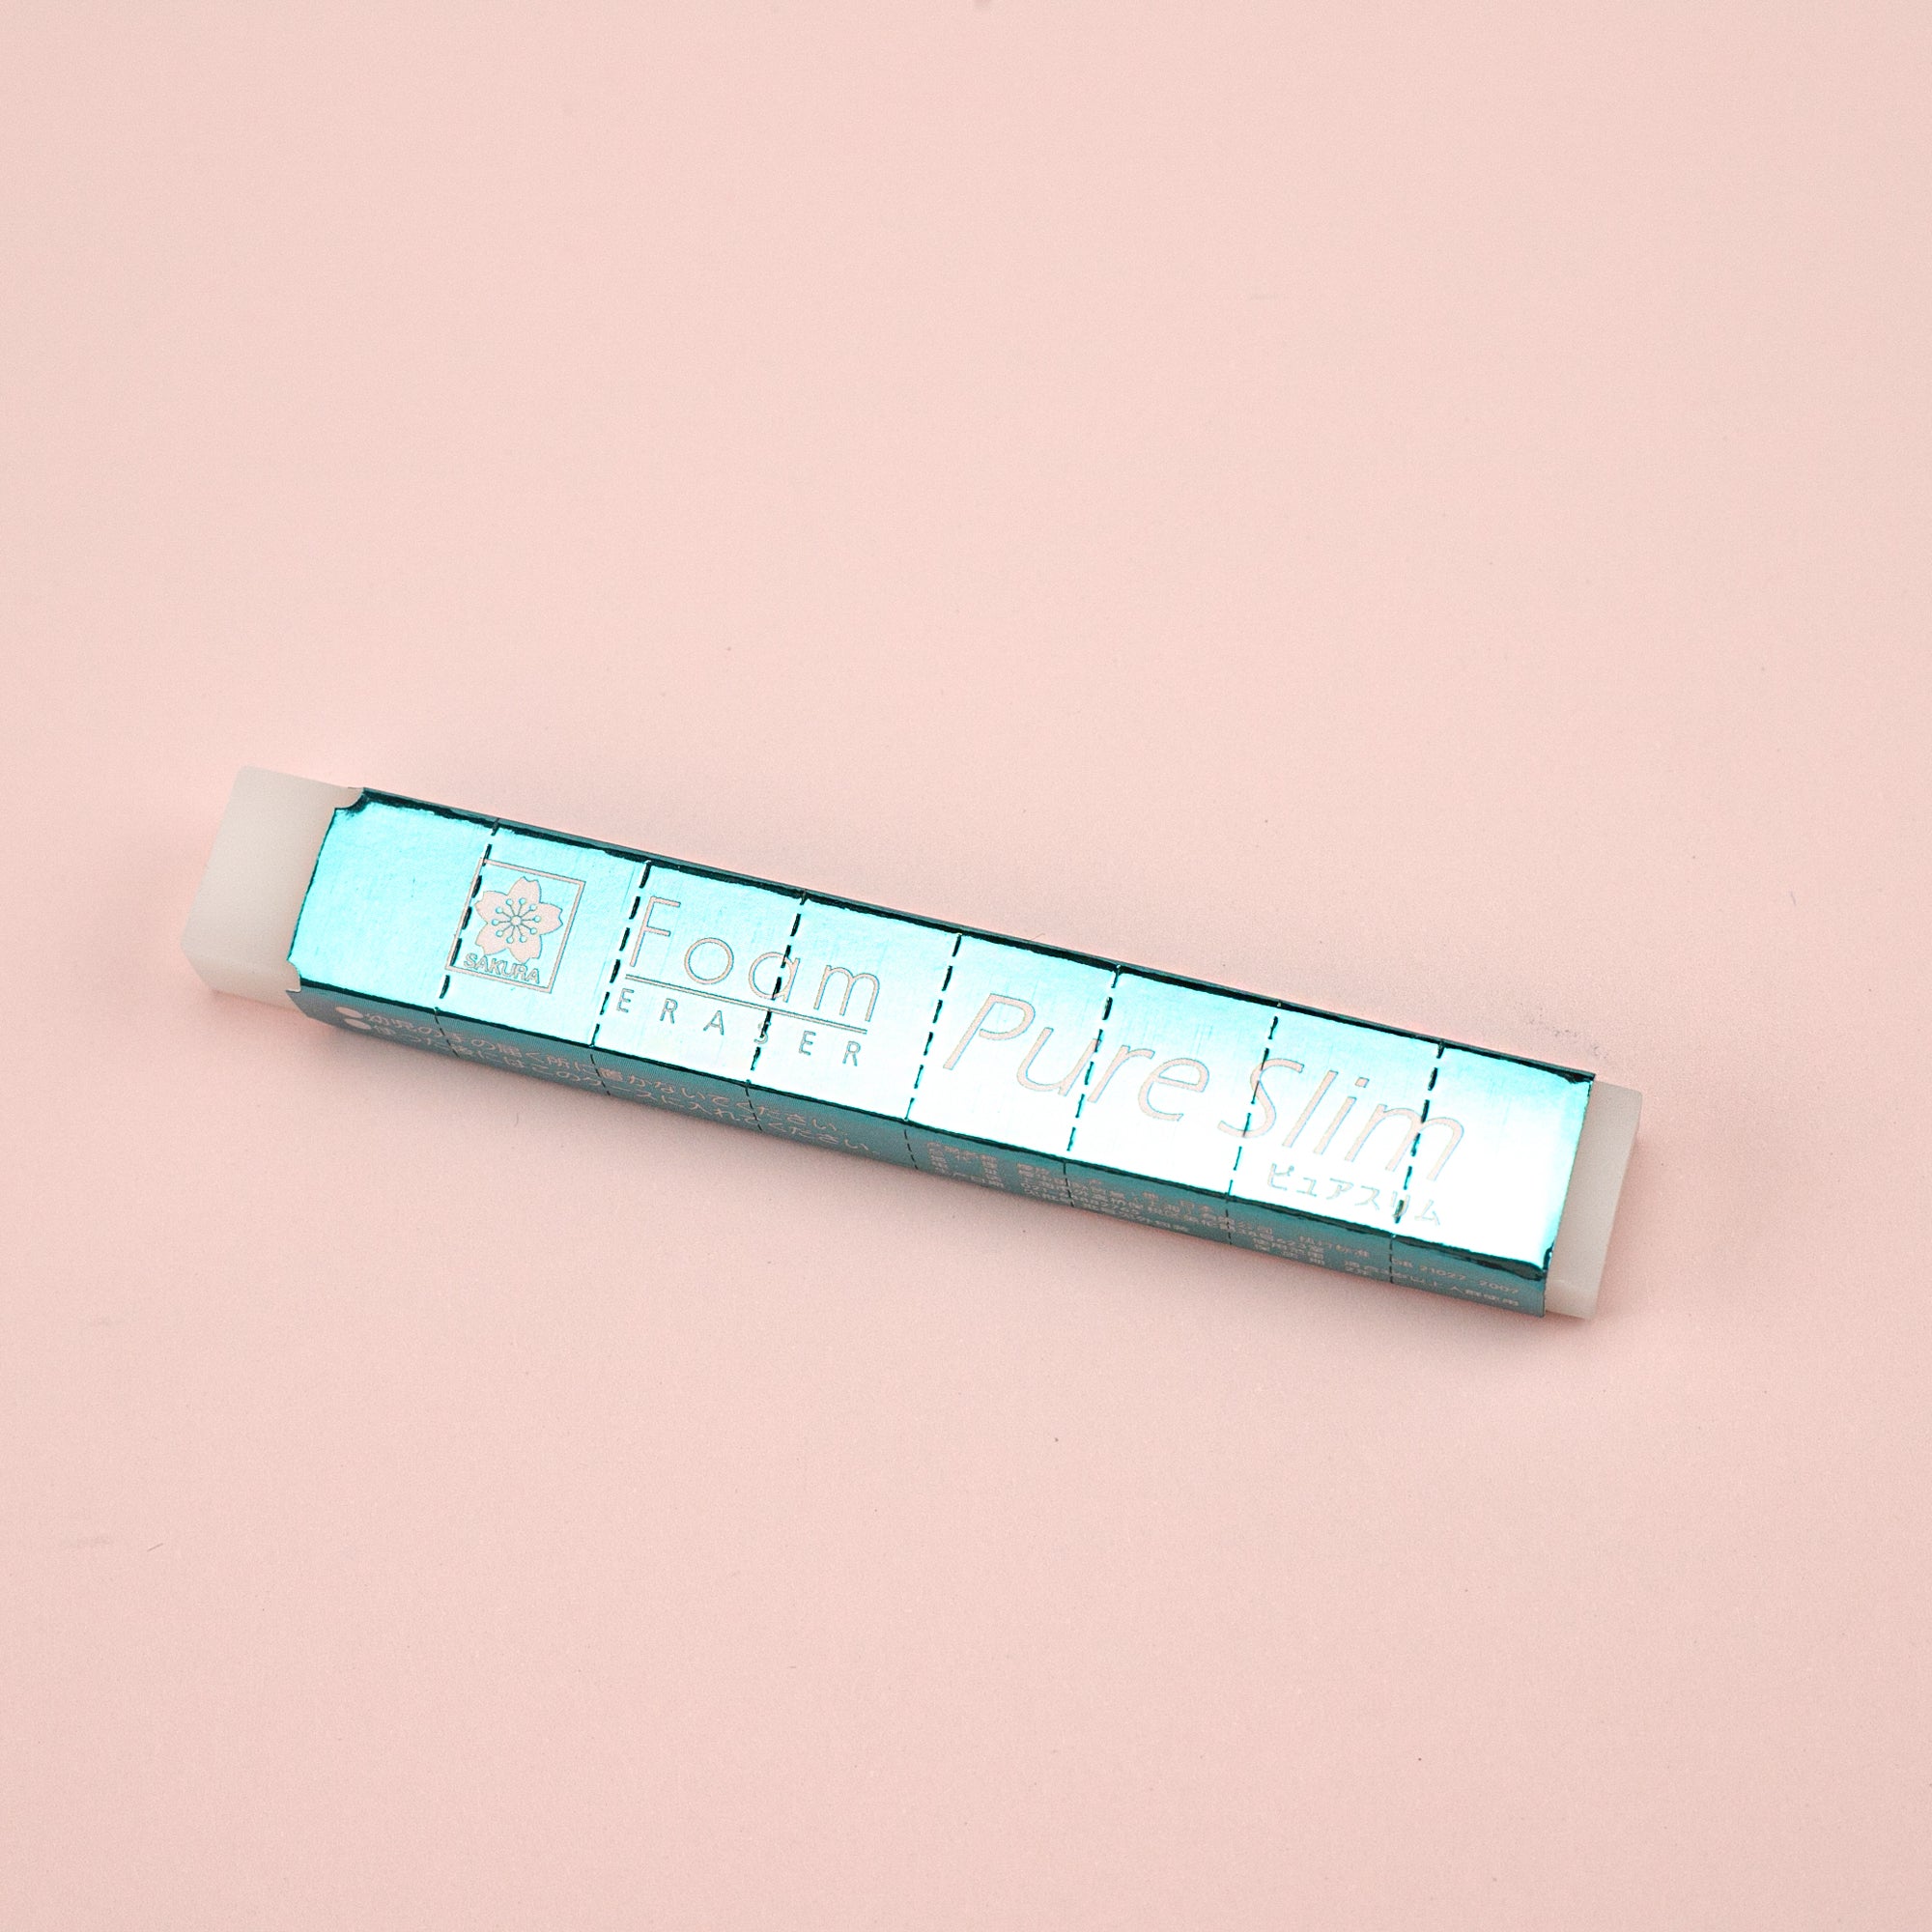 Sakura® Electric Eraser Refills, 60ct.